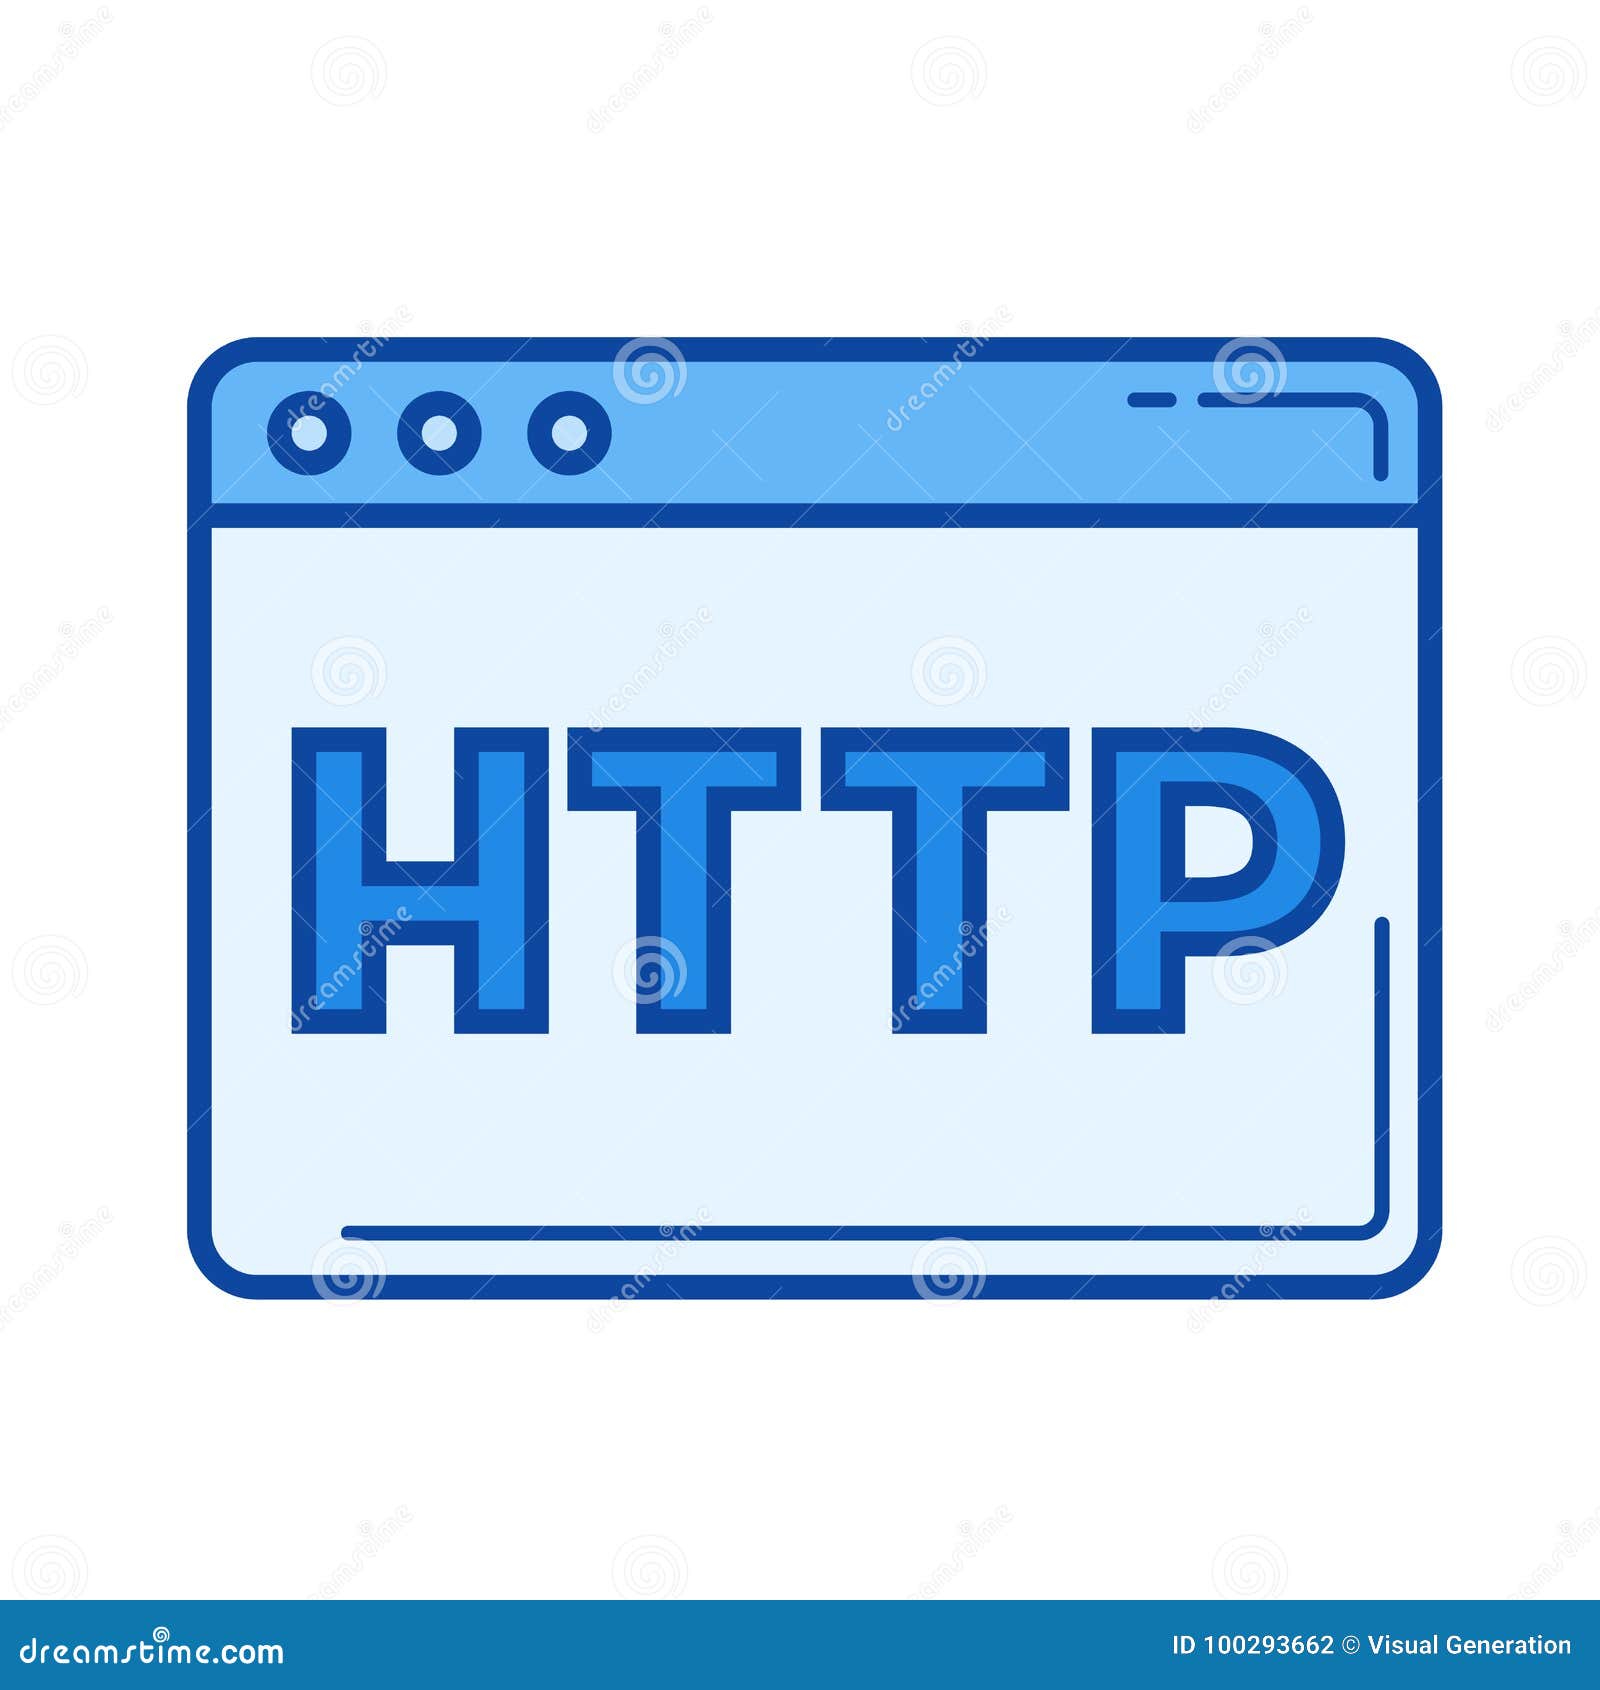 Http icons. Протокол иконка. Домен иконка. Иконка http-запрос белого цвета. S7 протокол лого.